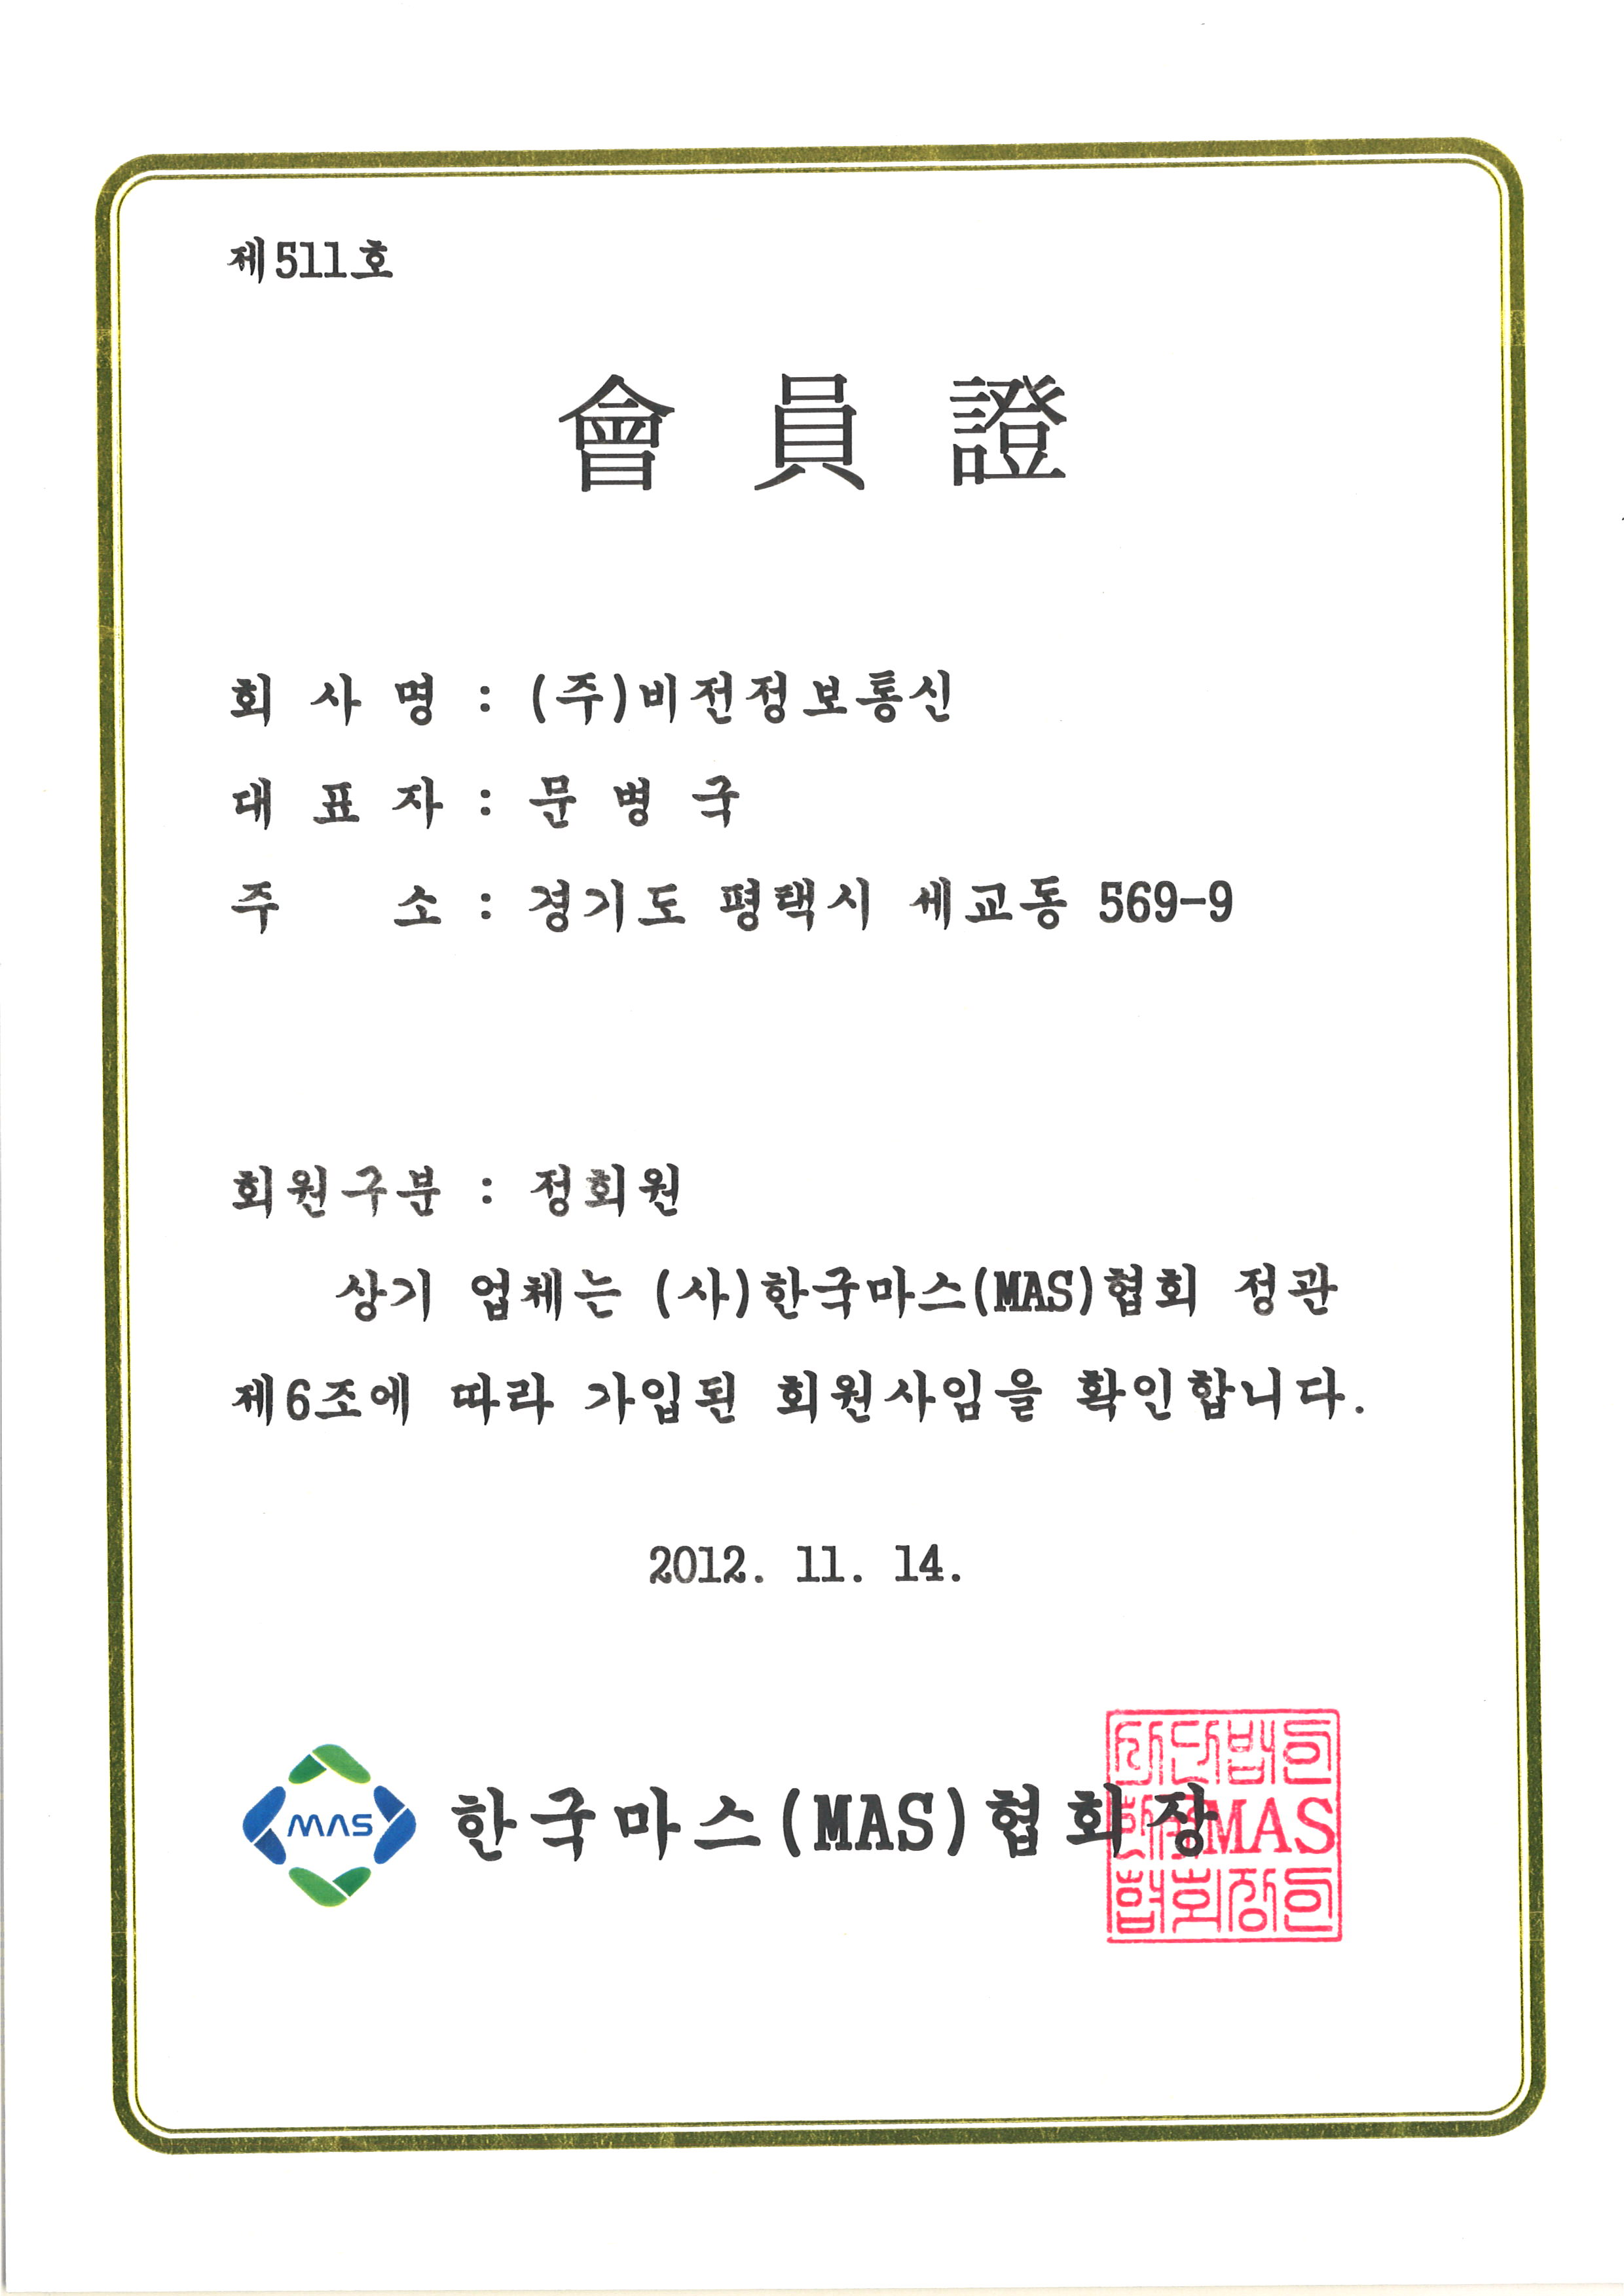 한국마스협회 회원증